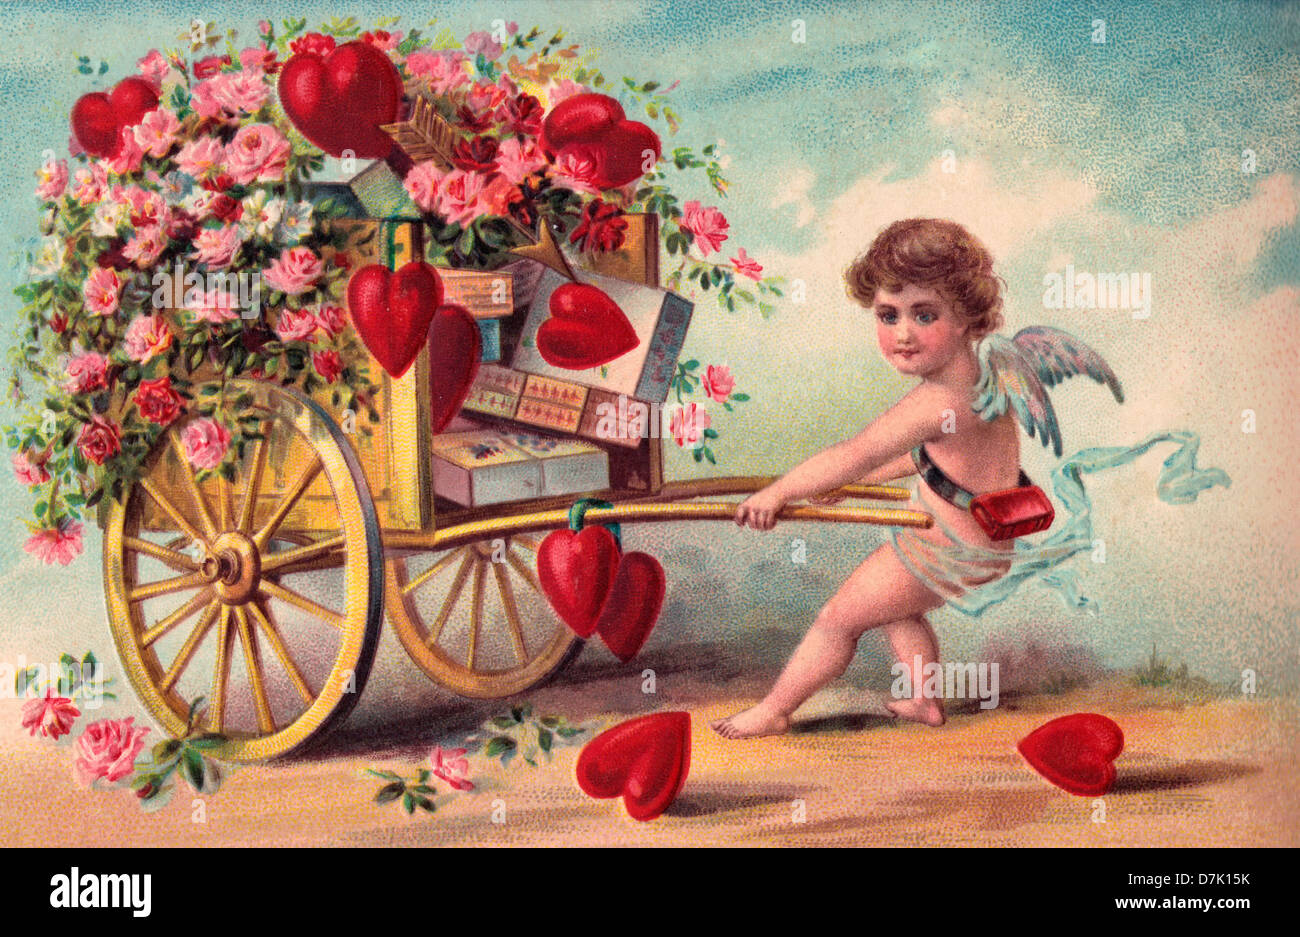 è , sarà Valentino ... Vintage-il-giorno-di-san-valentino-card-con-cupido-tirando-il-carrello-di-fiori-cuori-e-cioccolatini-d7k15k